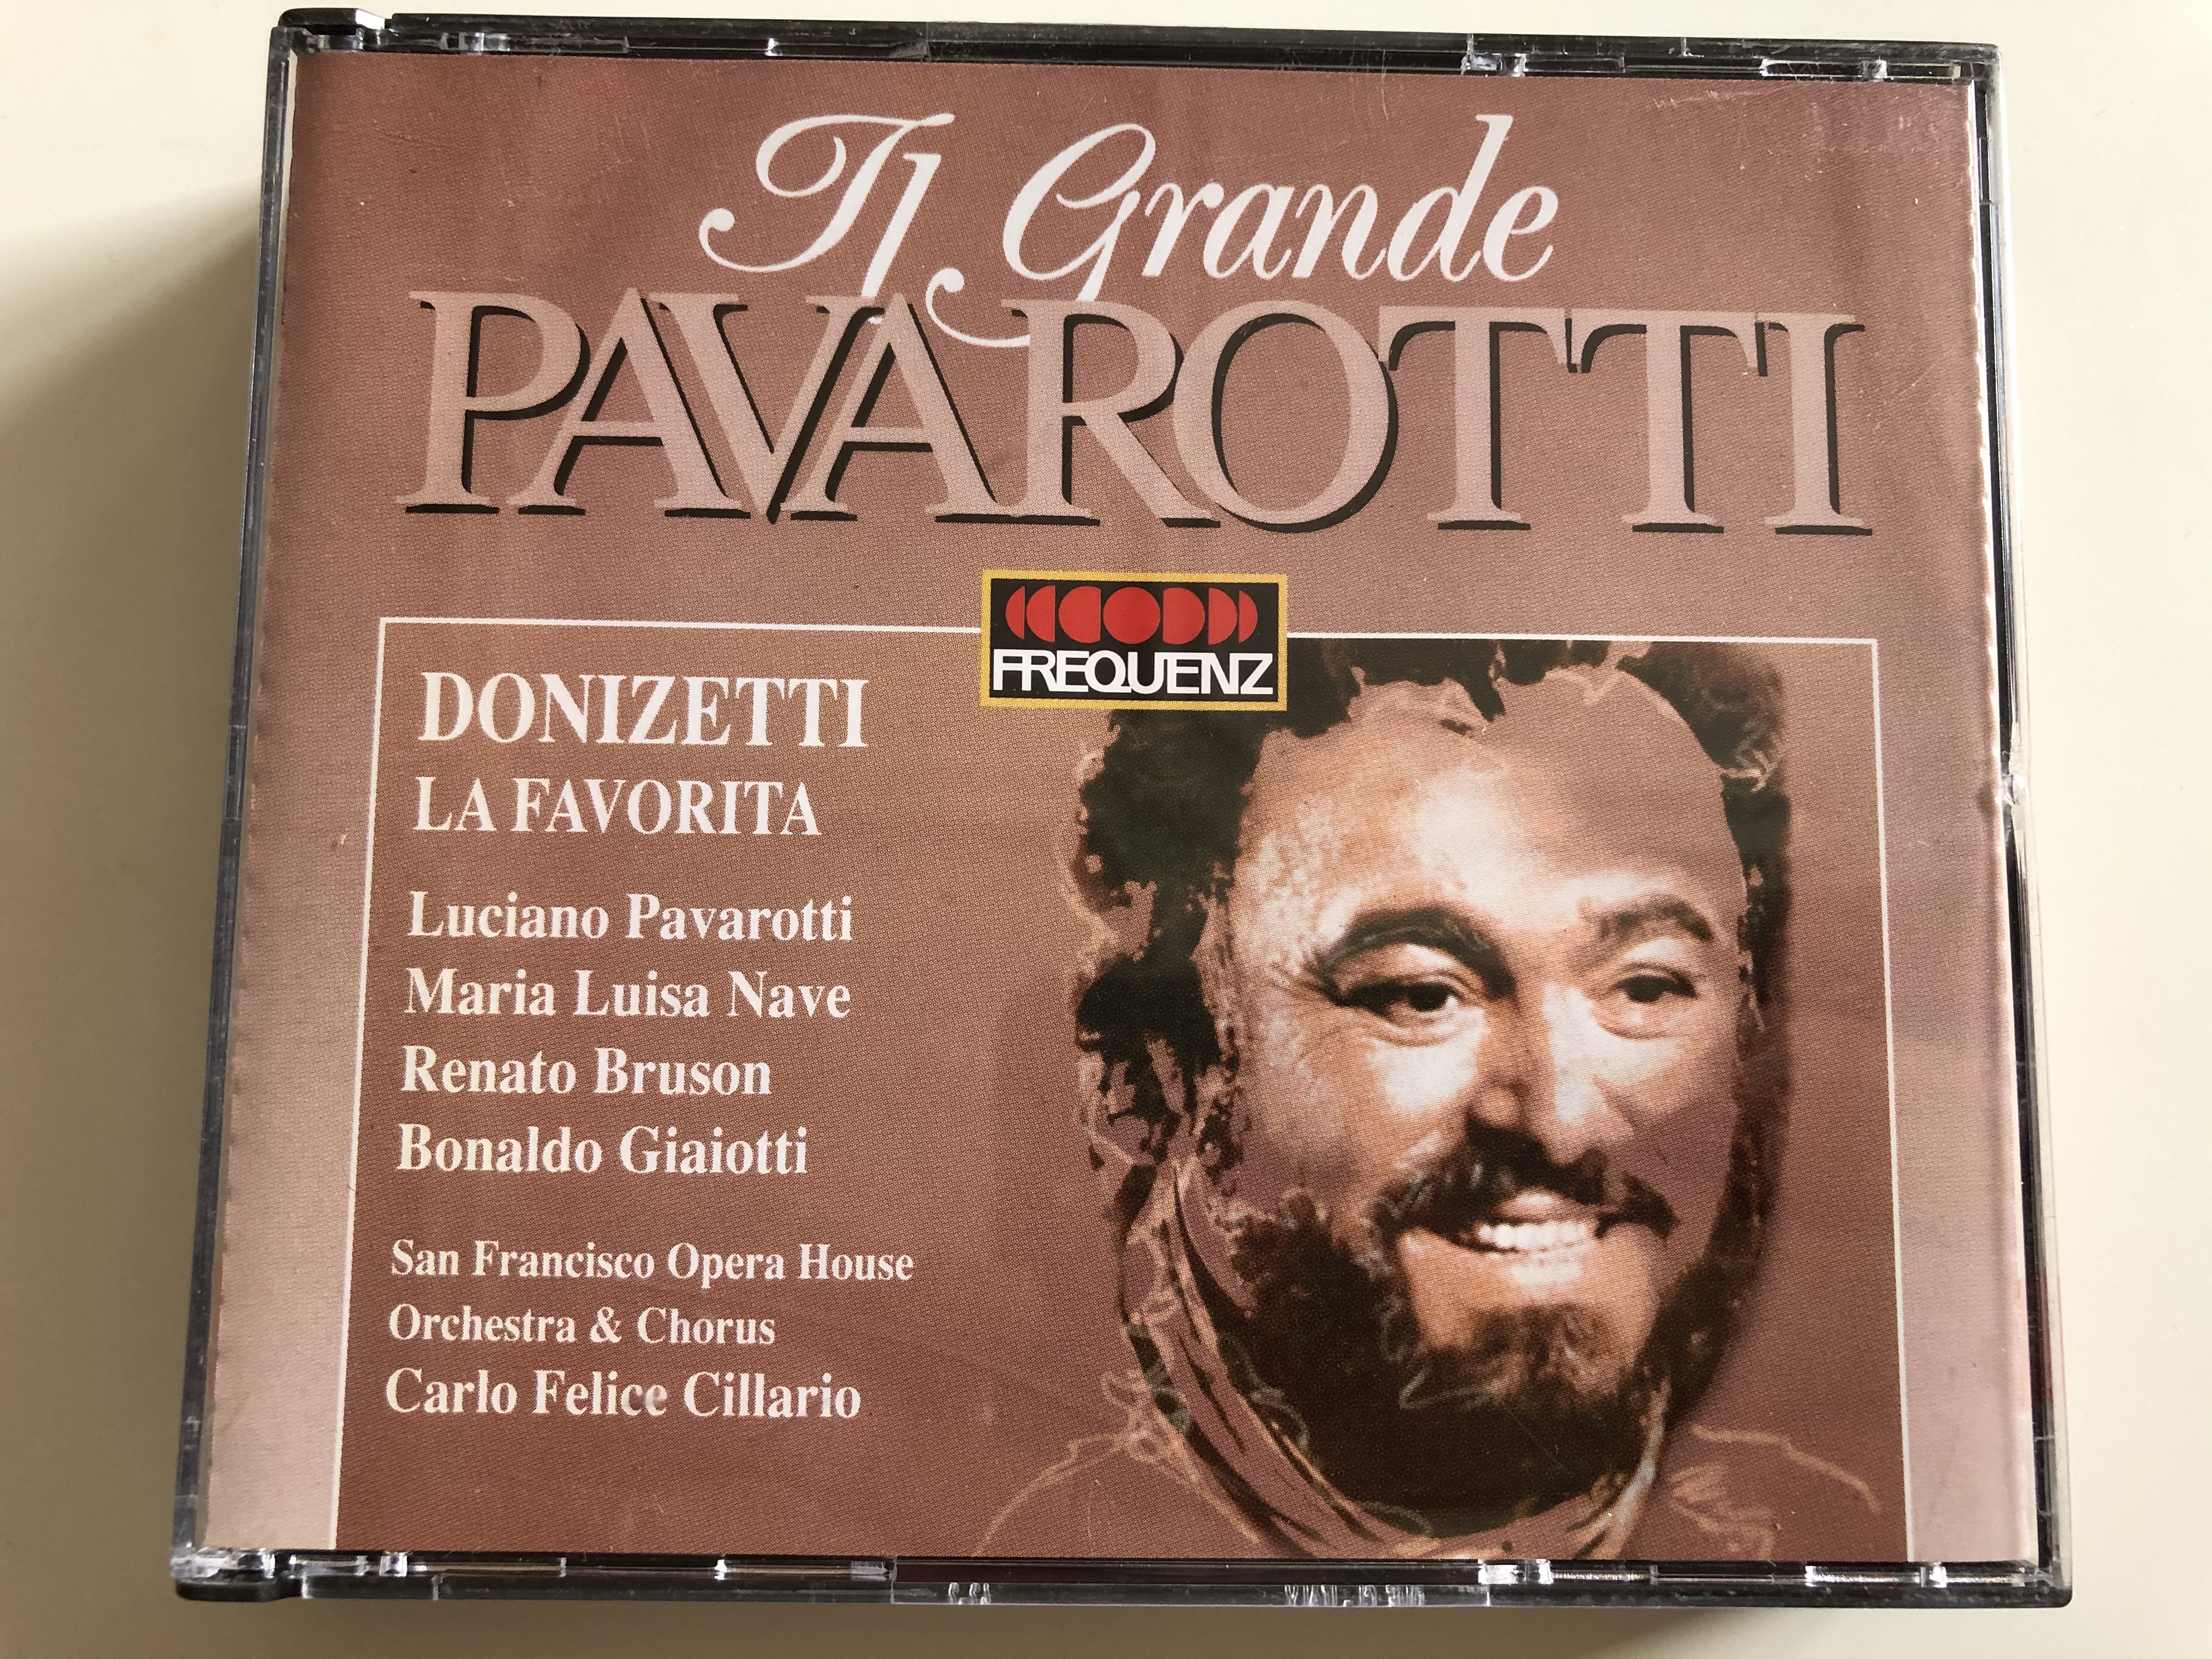 il-grande-pavarotti-donizetti-la-favorita-luciano-pavarotti-maria-luisa-nave-renato-bruson-bonaldo-giaiotti-san-francisco-opera-house-orchestra-chorus-carlo-felice-cillario-frequenz-1-.jpg